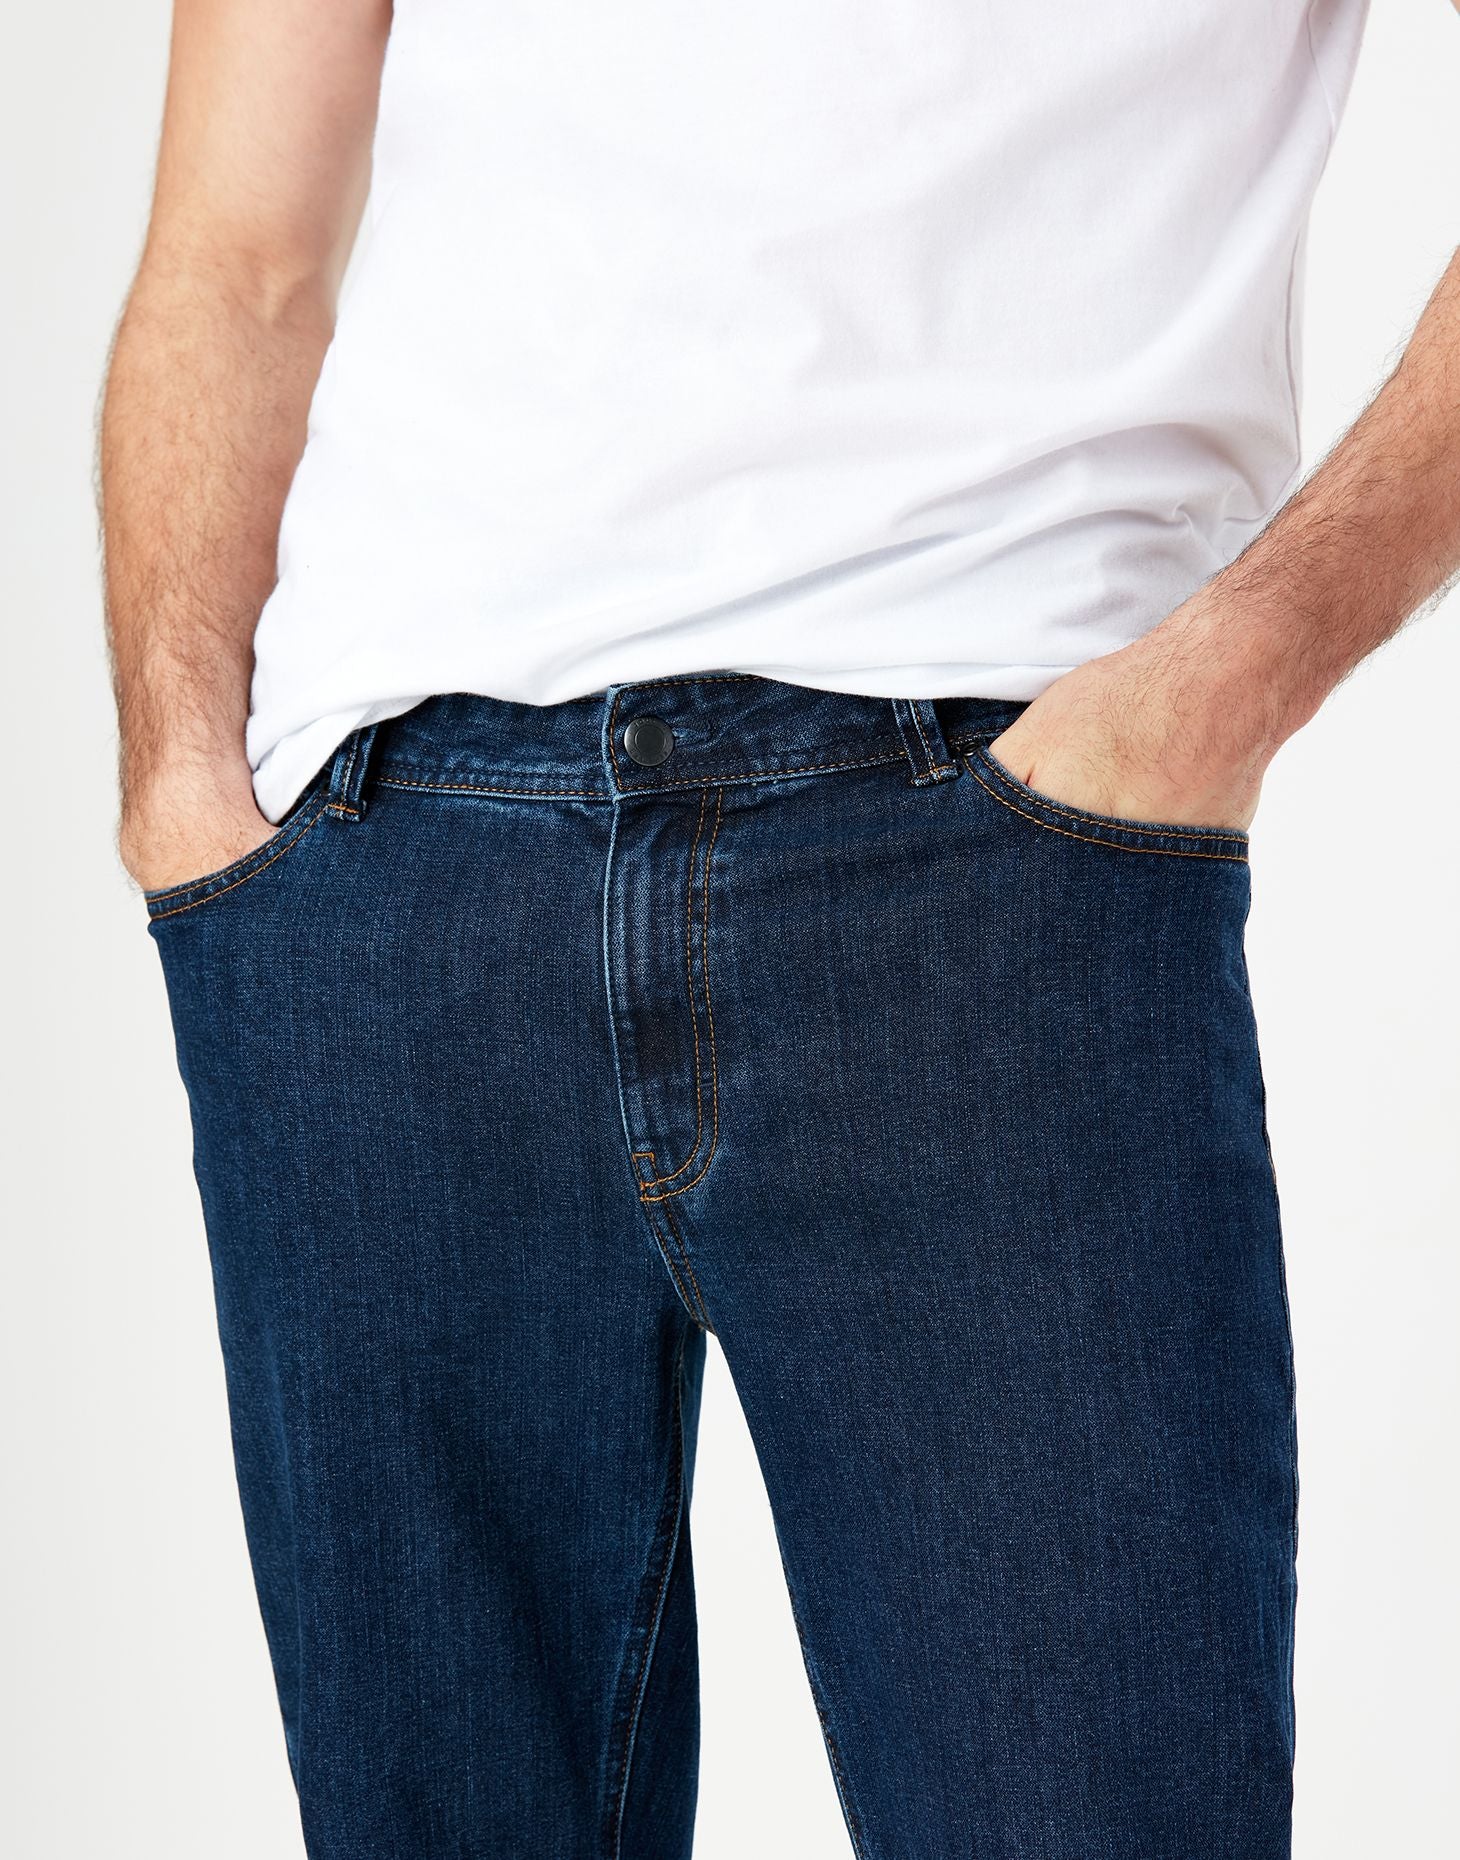 Men's 5 Pocket Jean - Straight